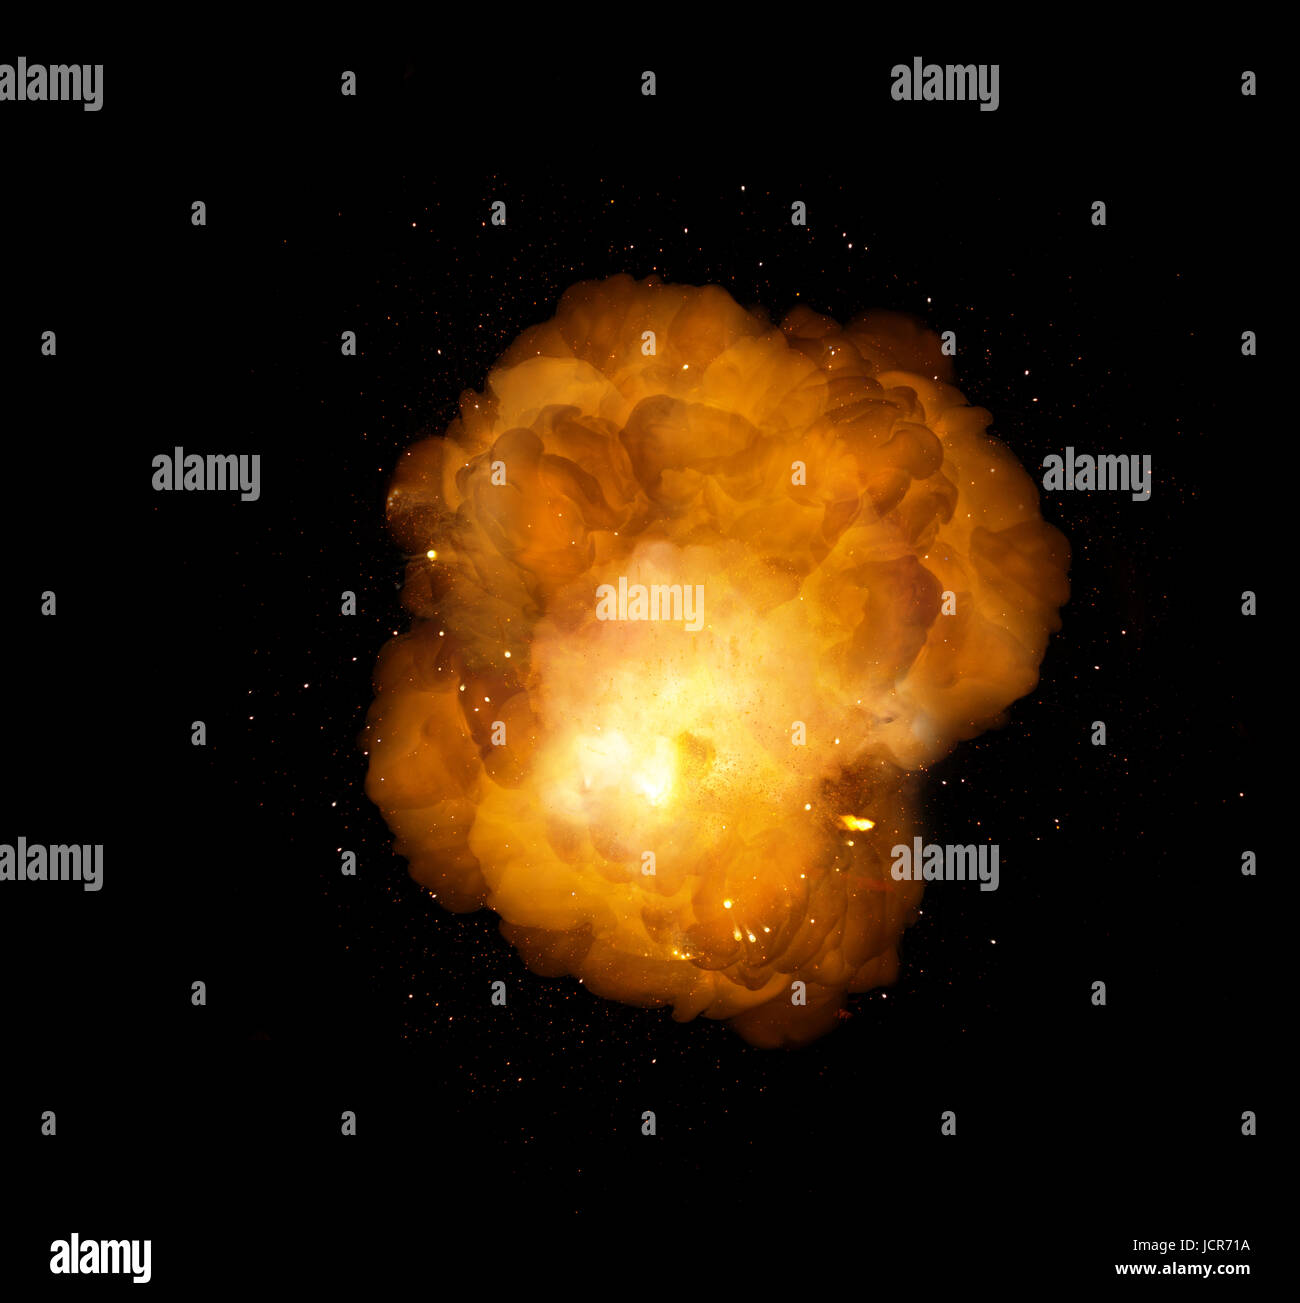 Énorme explosion extrêmement chaud, avec des étincelles et de la fumée chaude, sur fond noir Banque D'Images